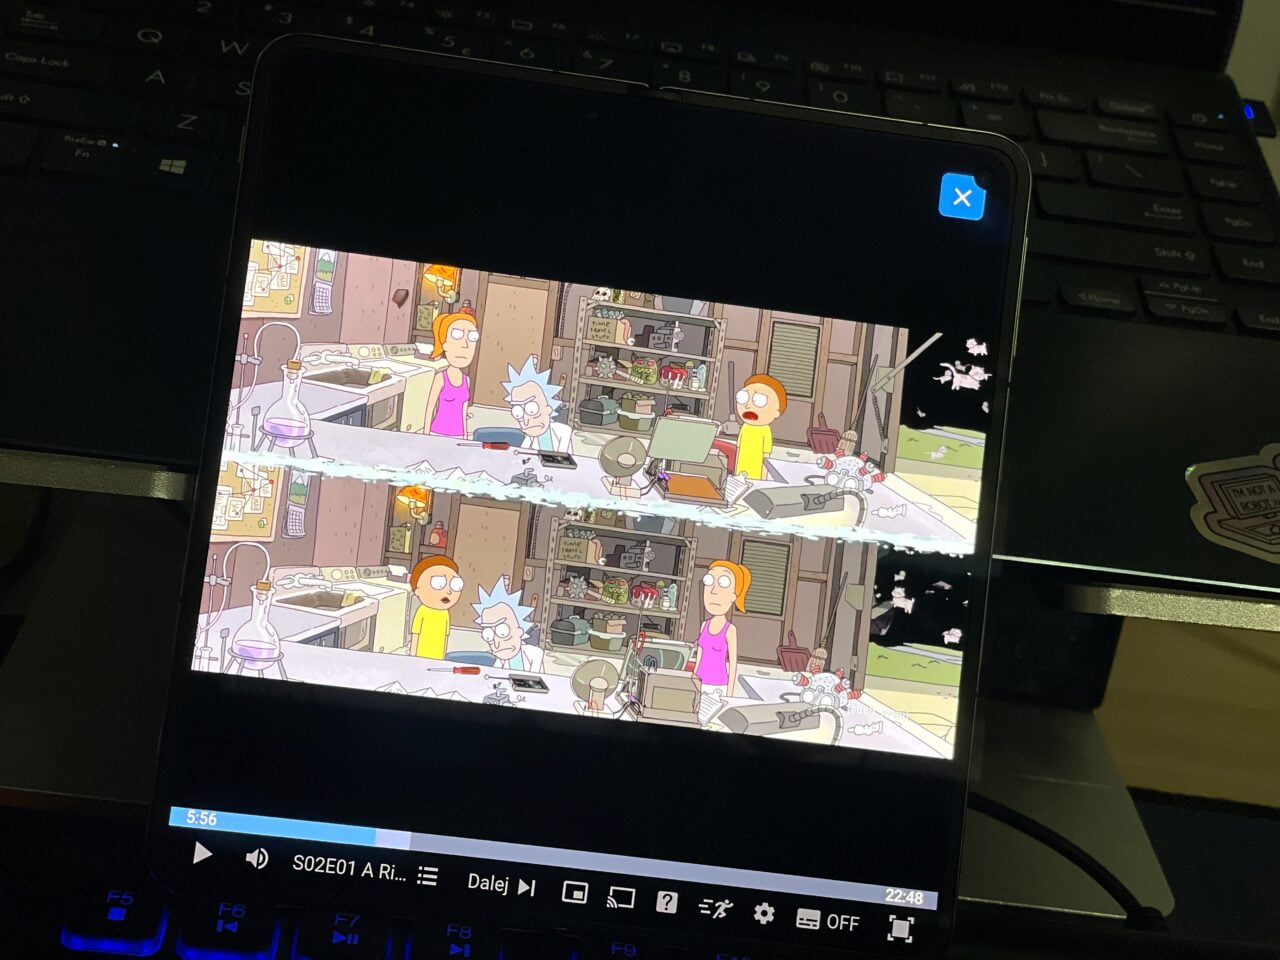 Tablet pokazujący scenę z animowanego serialu, stojący na klawiaturze laptopa. recenzja oneplus open